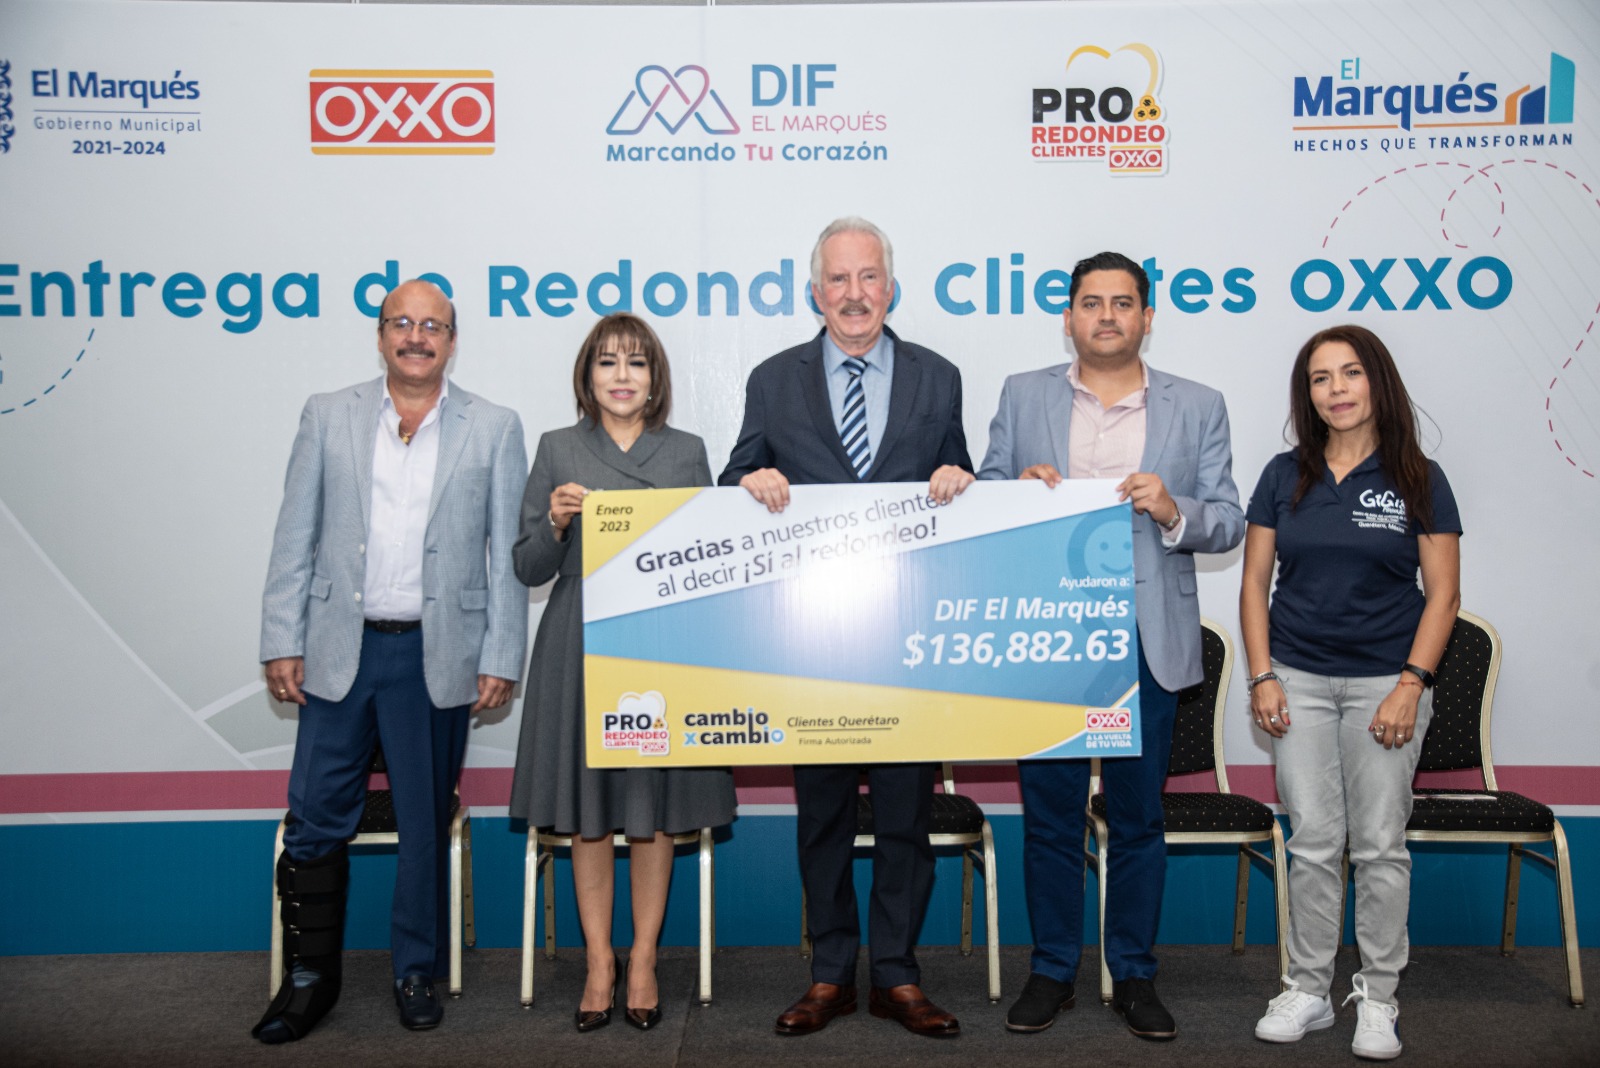 Municipio de El Marqués recibe donativo de tiendas OXXO que será destinado a comedores comunitarios de la demarcación